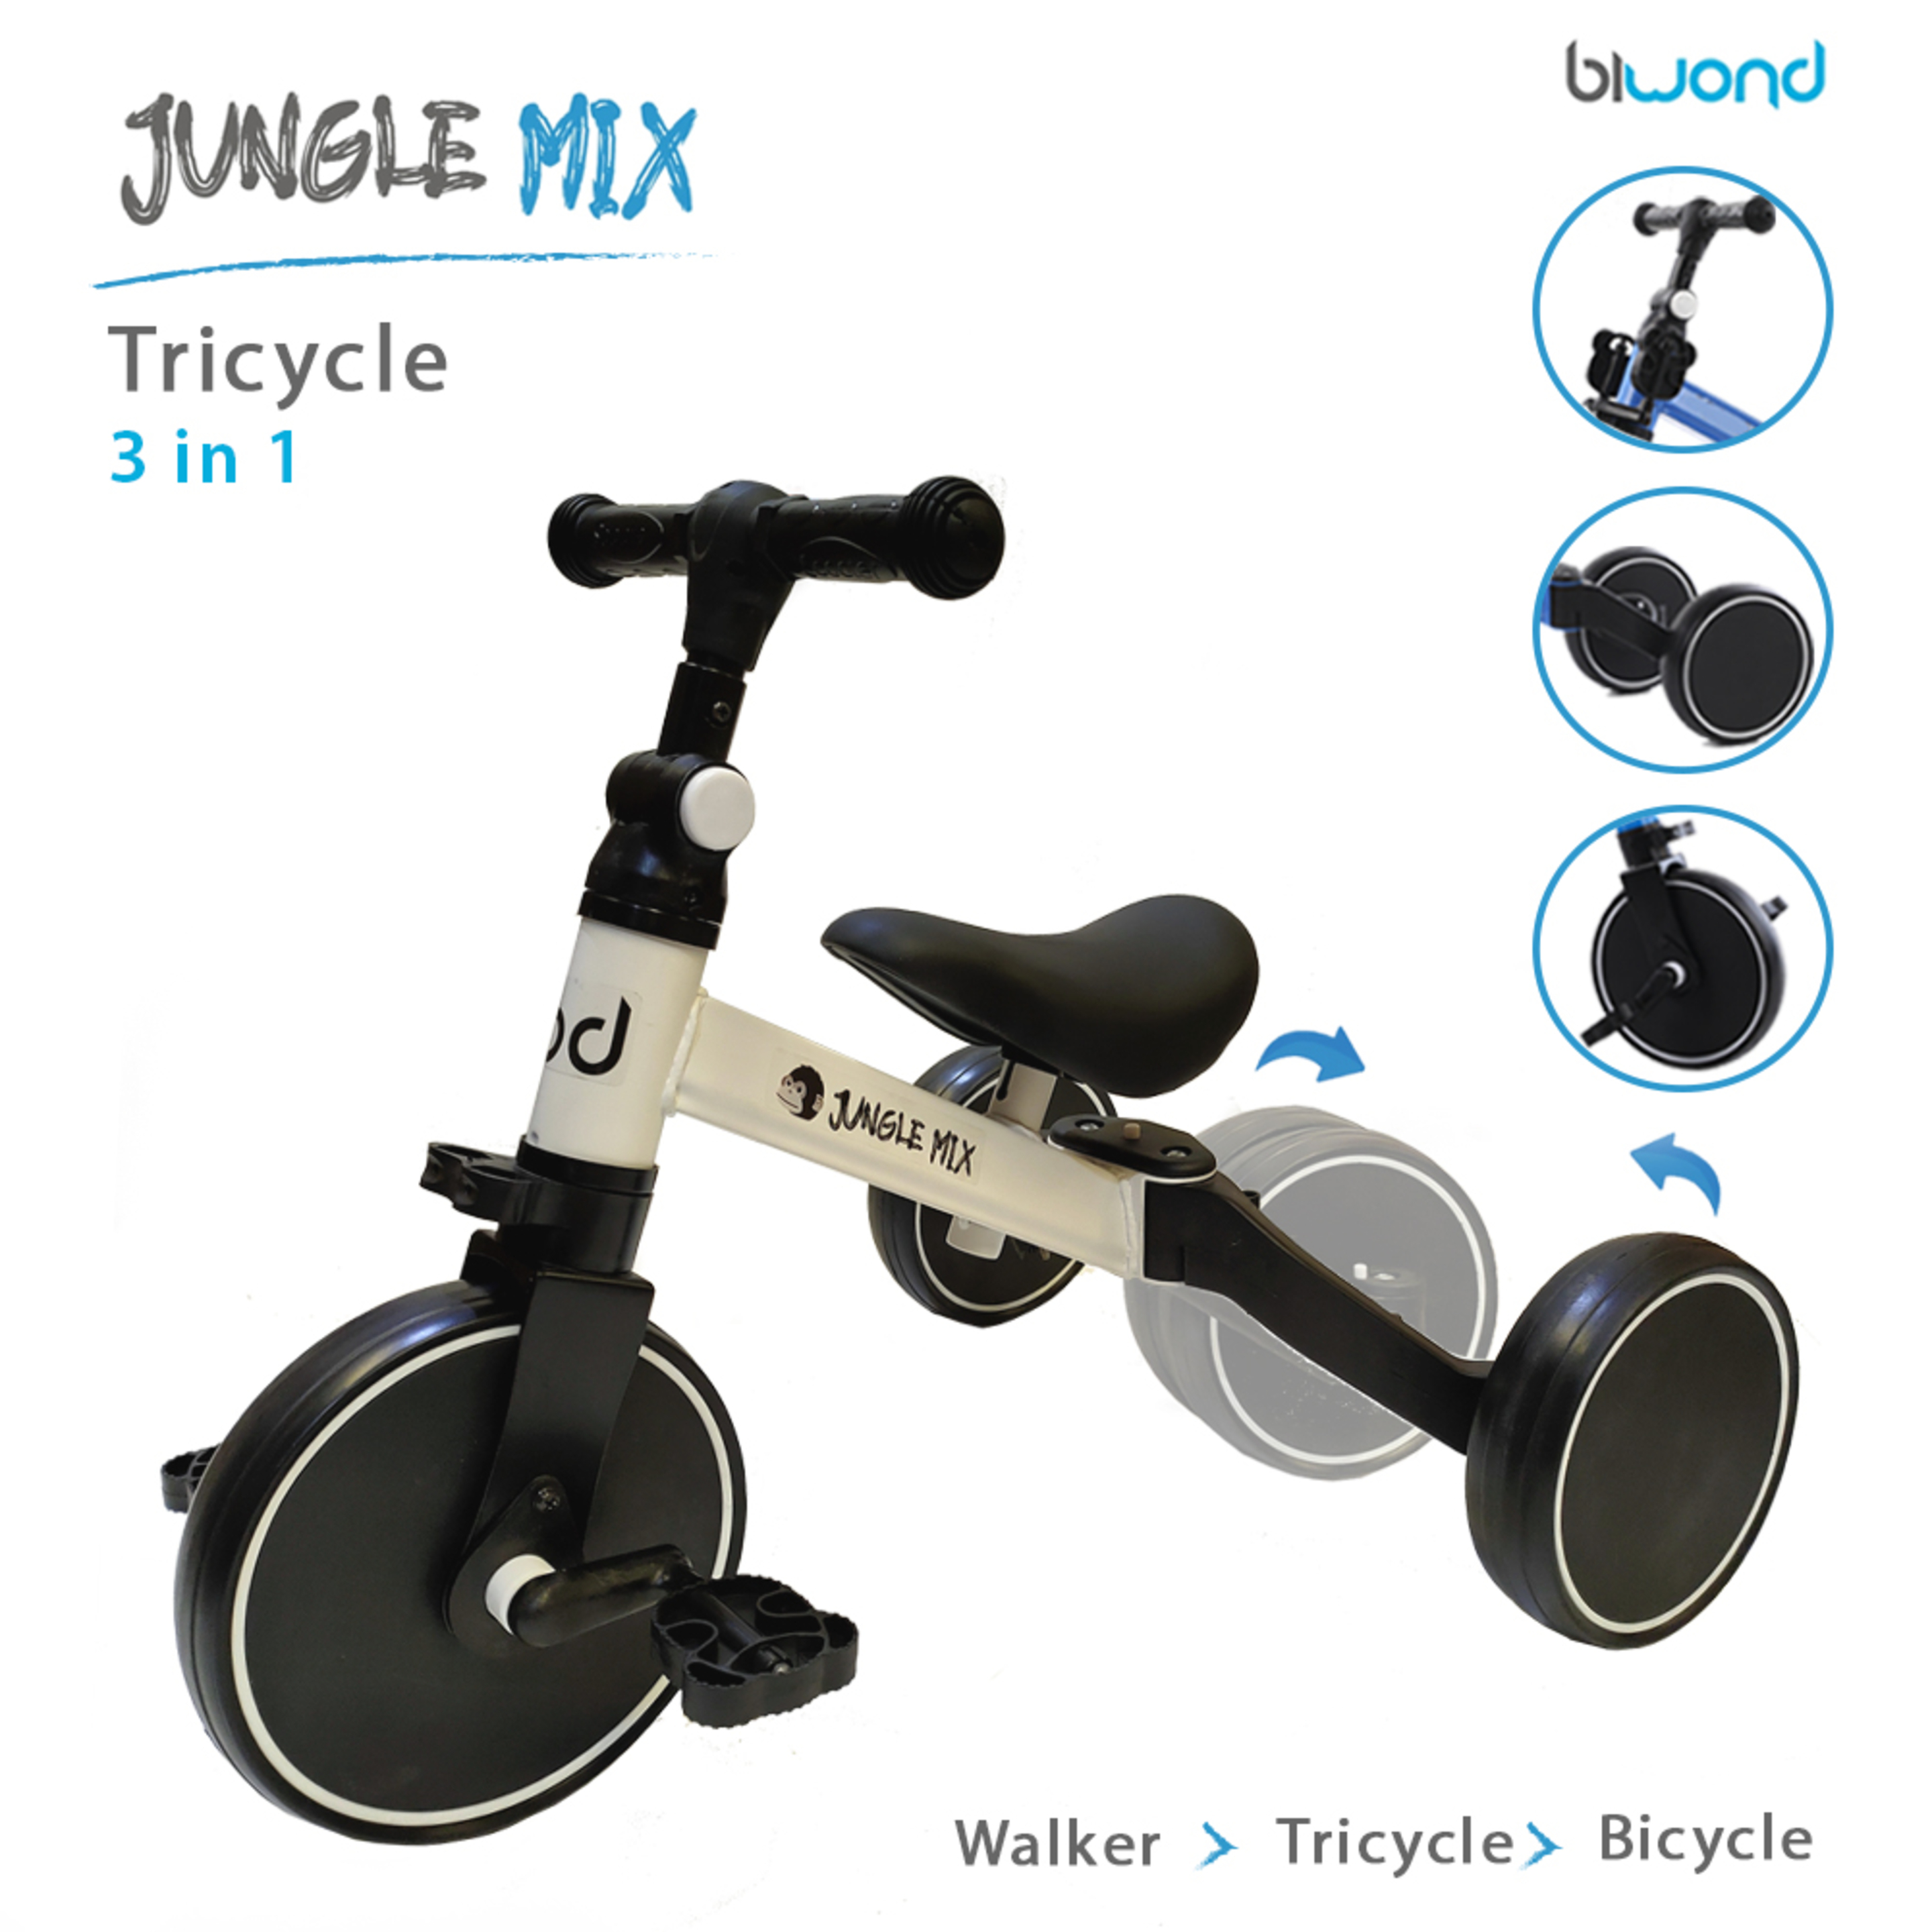 Triciclo Infantil Convertible 3 En 1 Jungle Mix Blanco Biwond